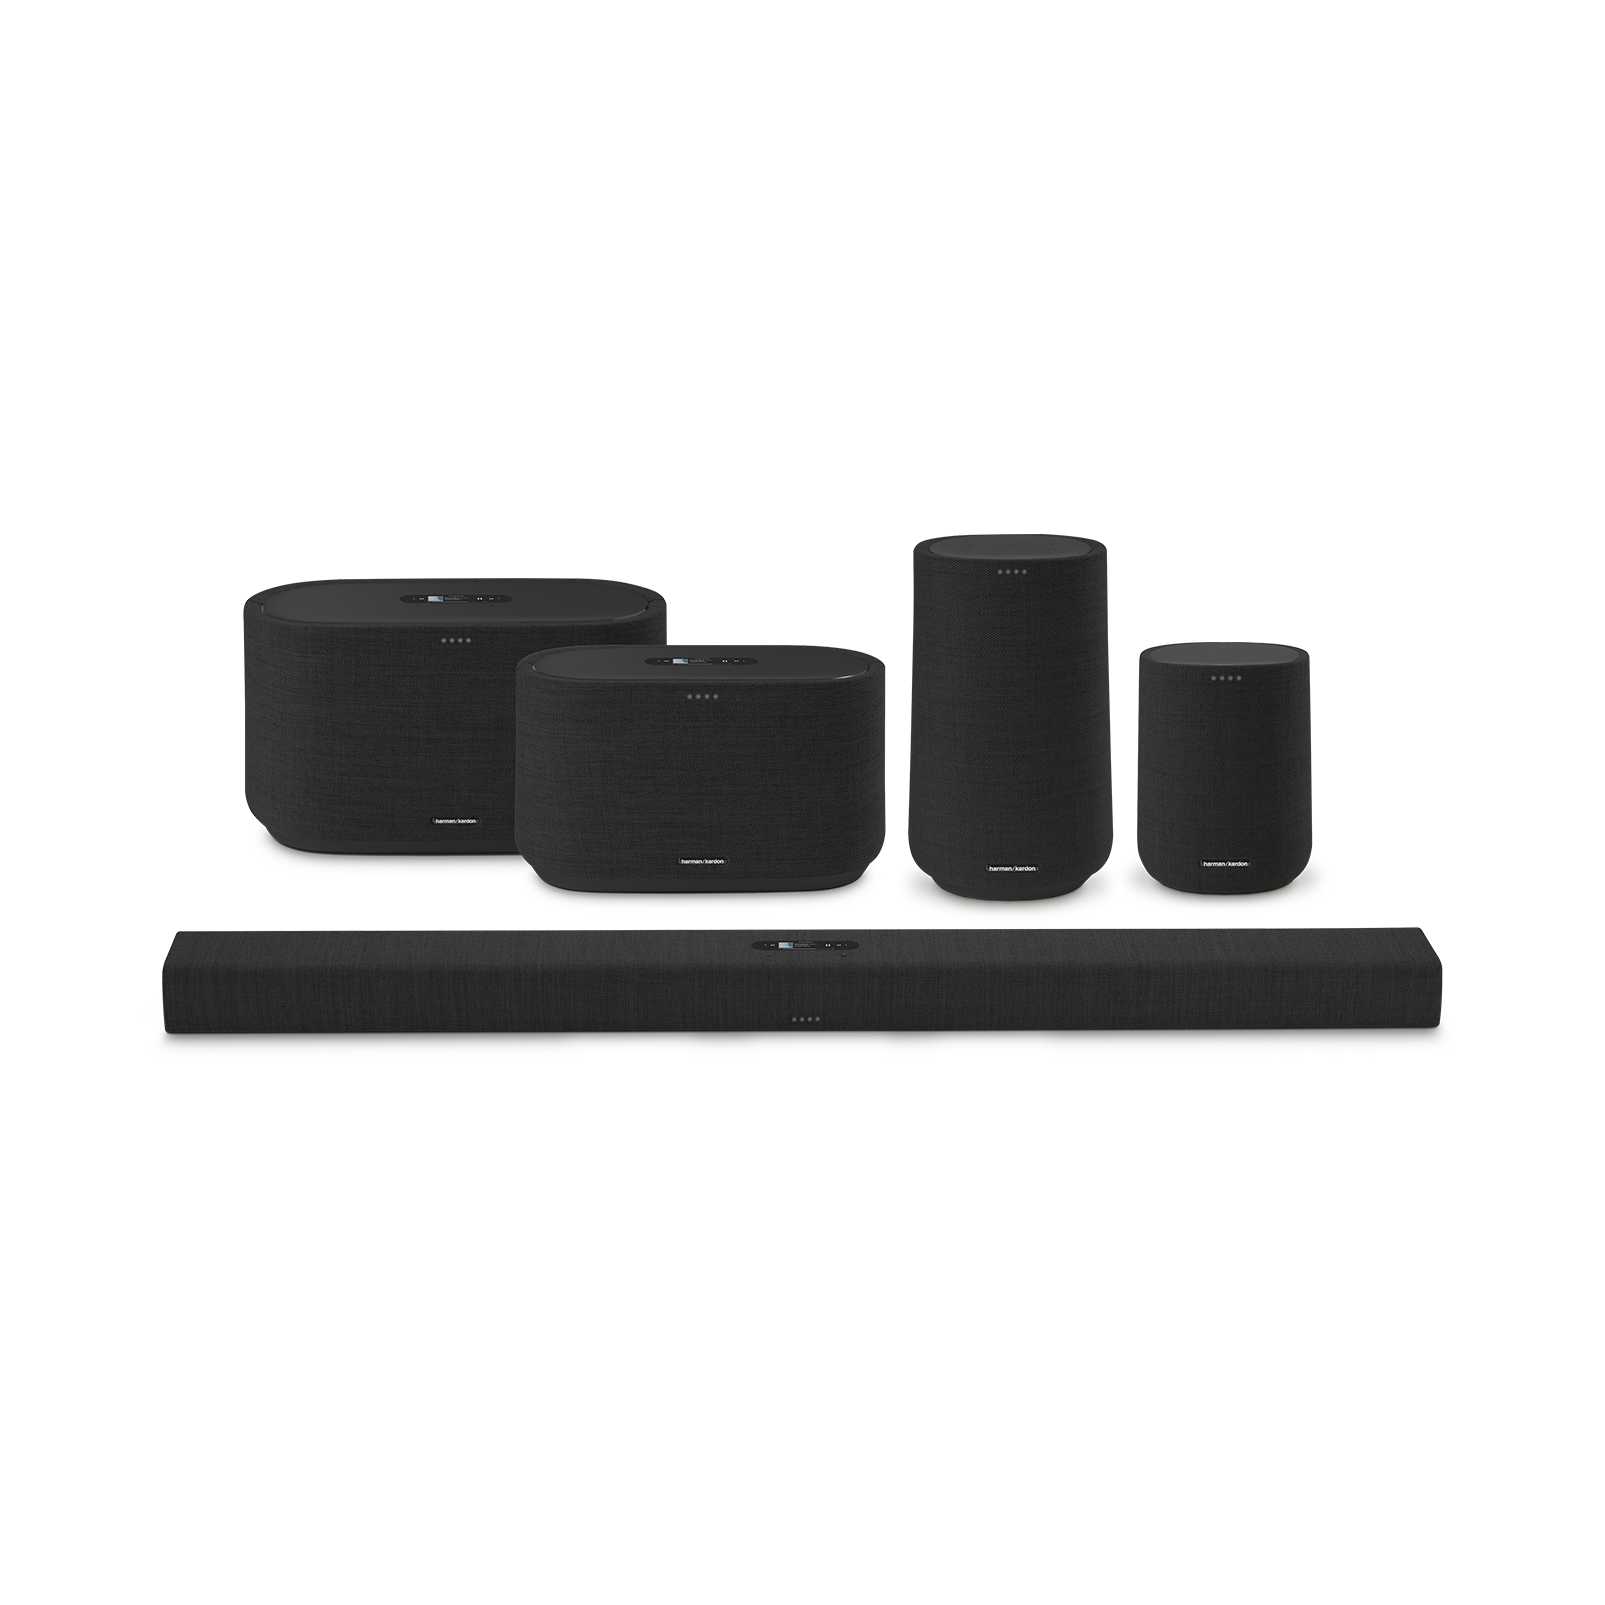 Harman Kardon Citation One MKIII - Black - All-in-one smart speaker with room-filling sound - Detailshot 5